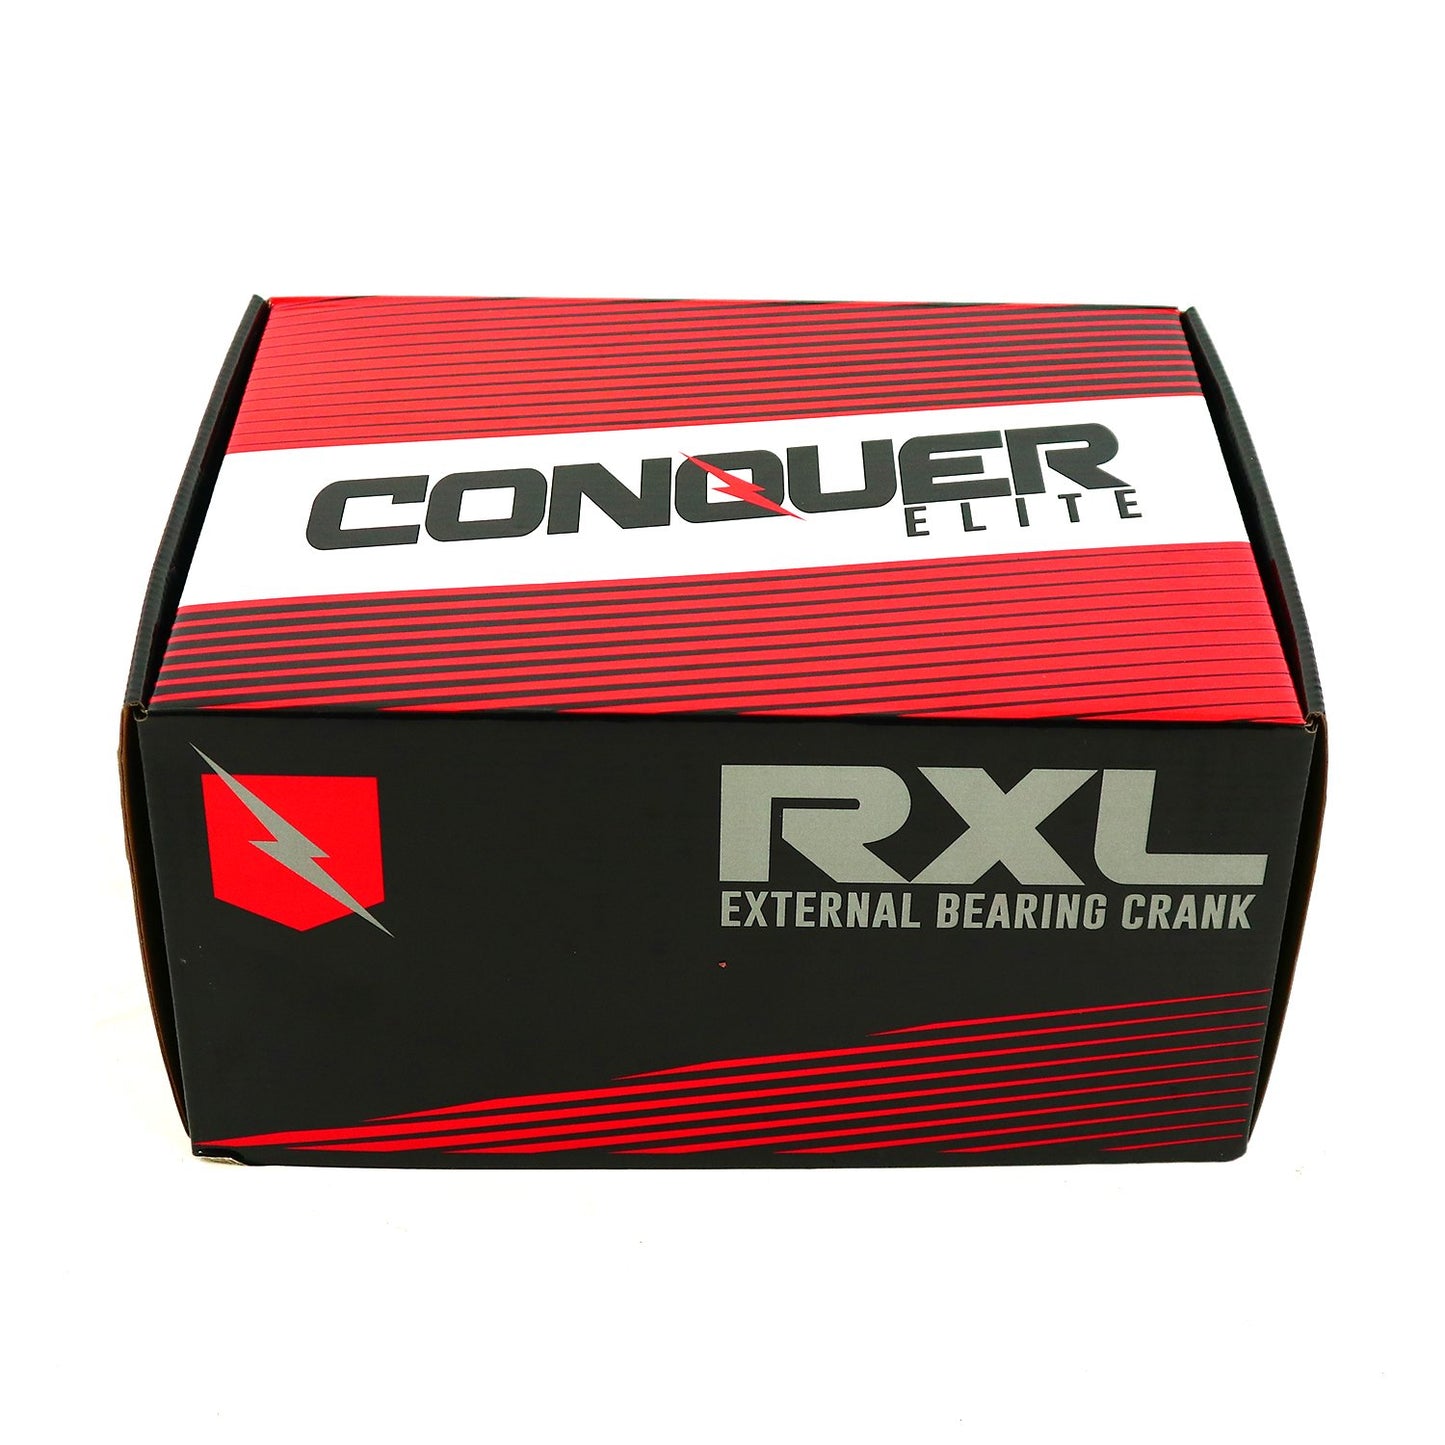 Conquer Elite - Crankset - RXL